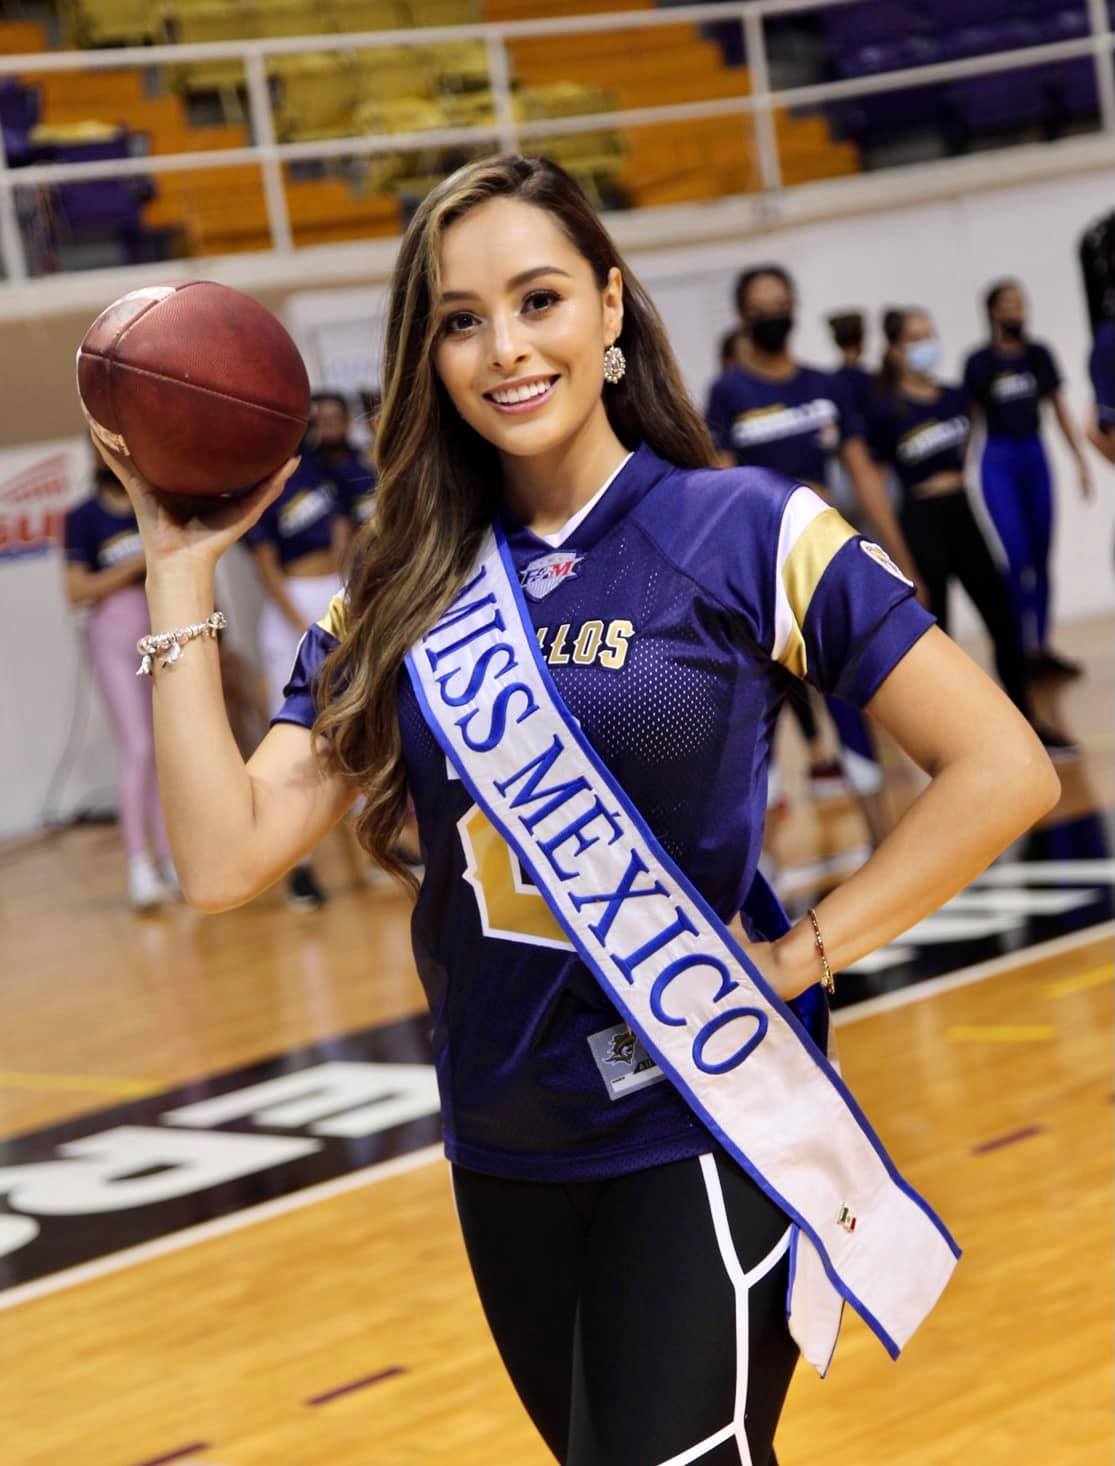 ashley alvidrez, top 12 de miss world 2019. - Página 11 20885910